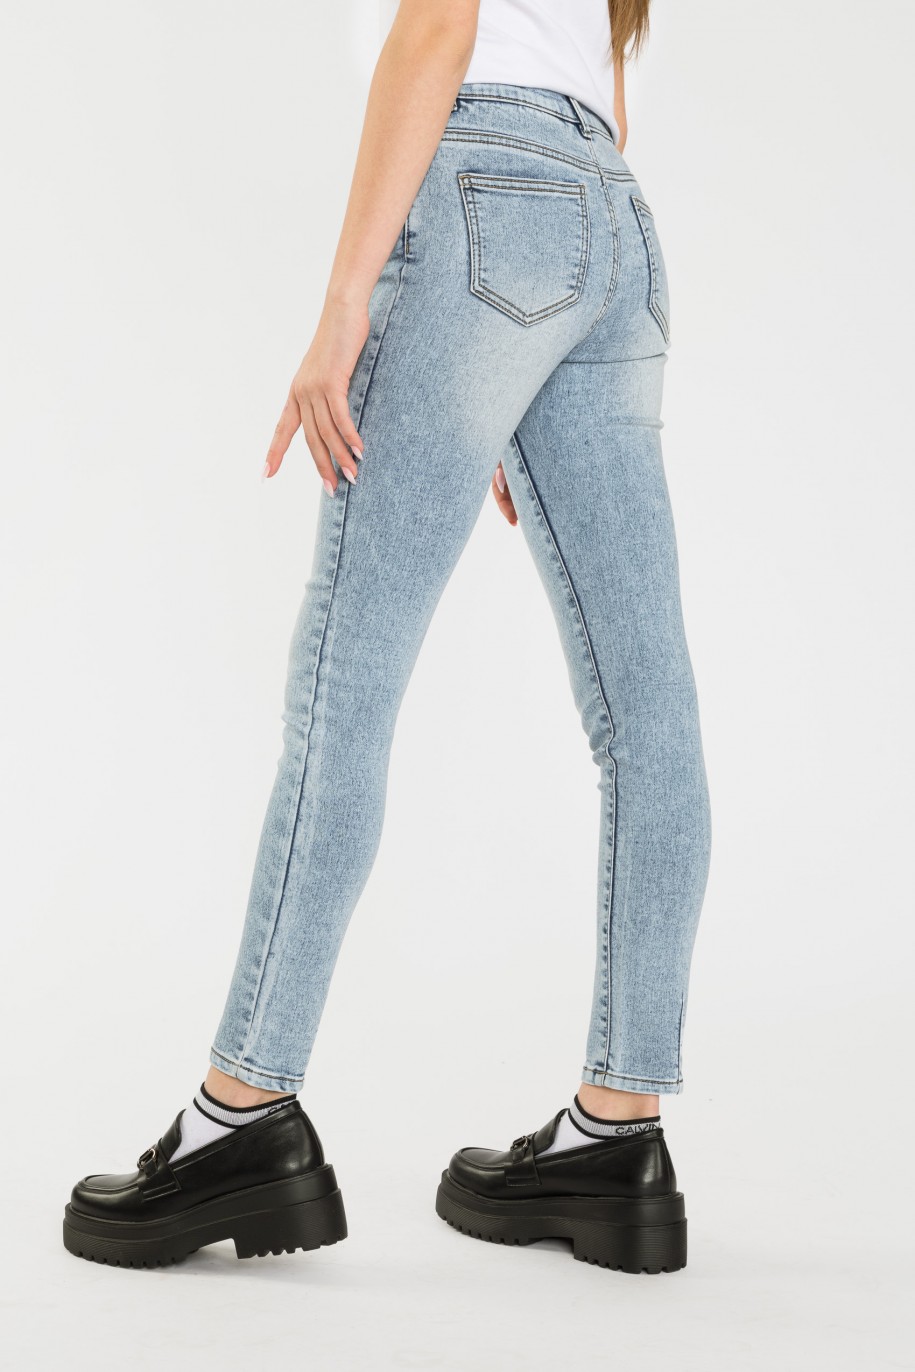 Niebieskie jeansy typu rurki - 40879